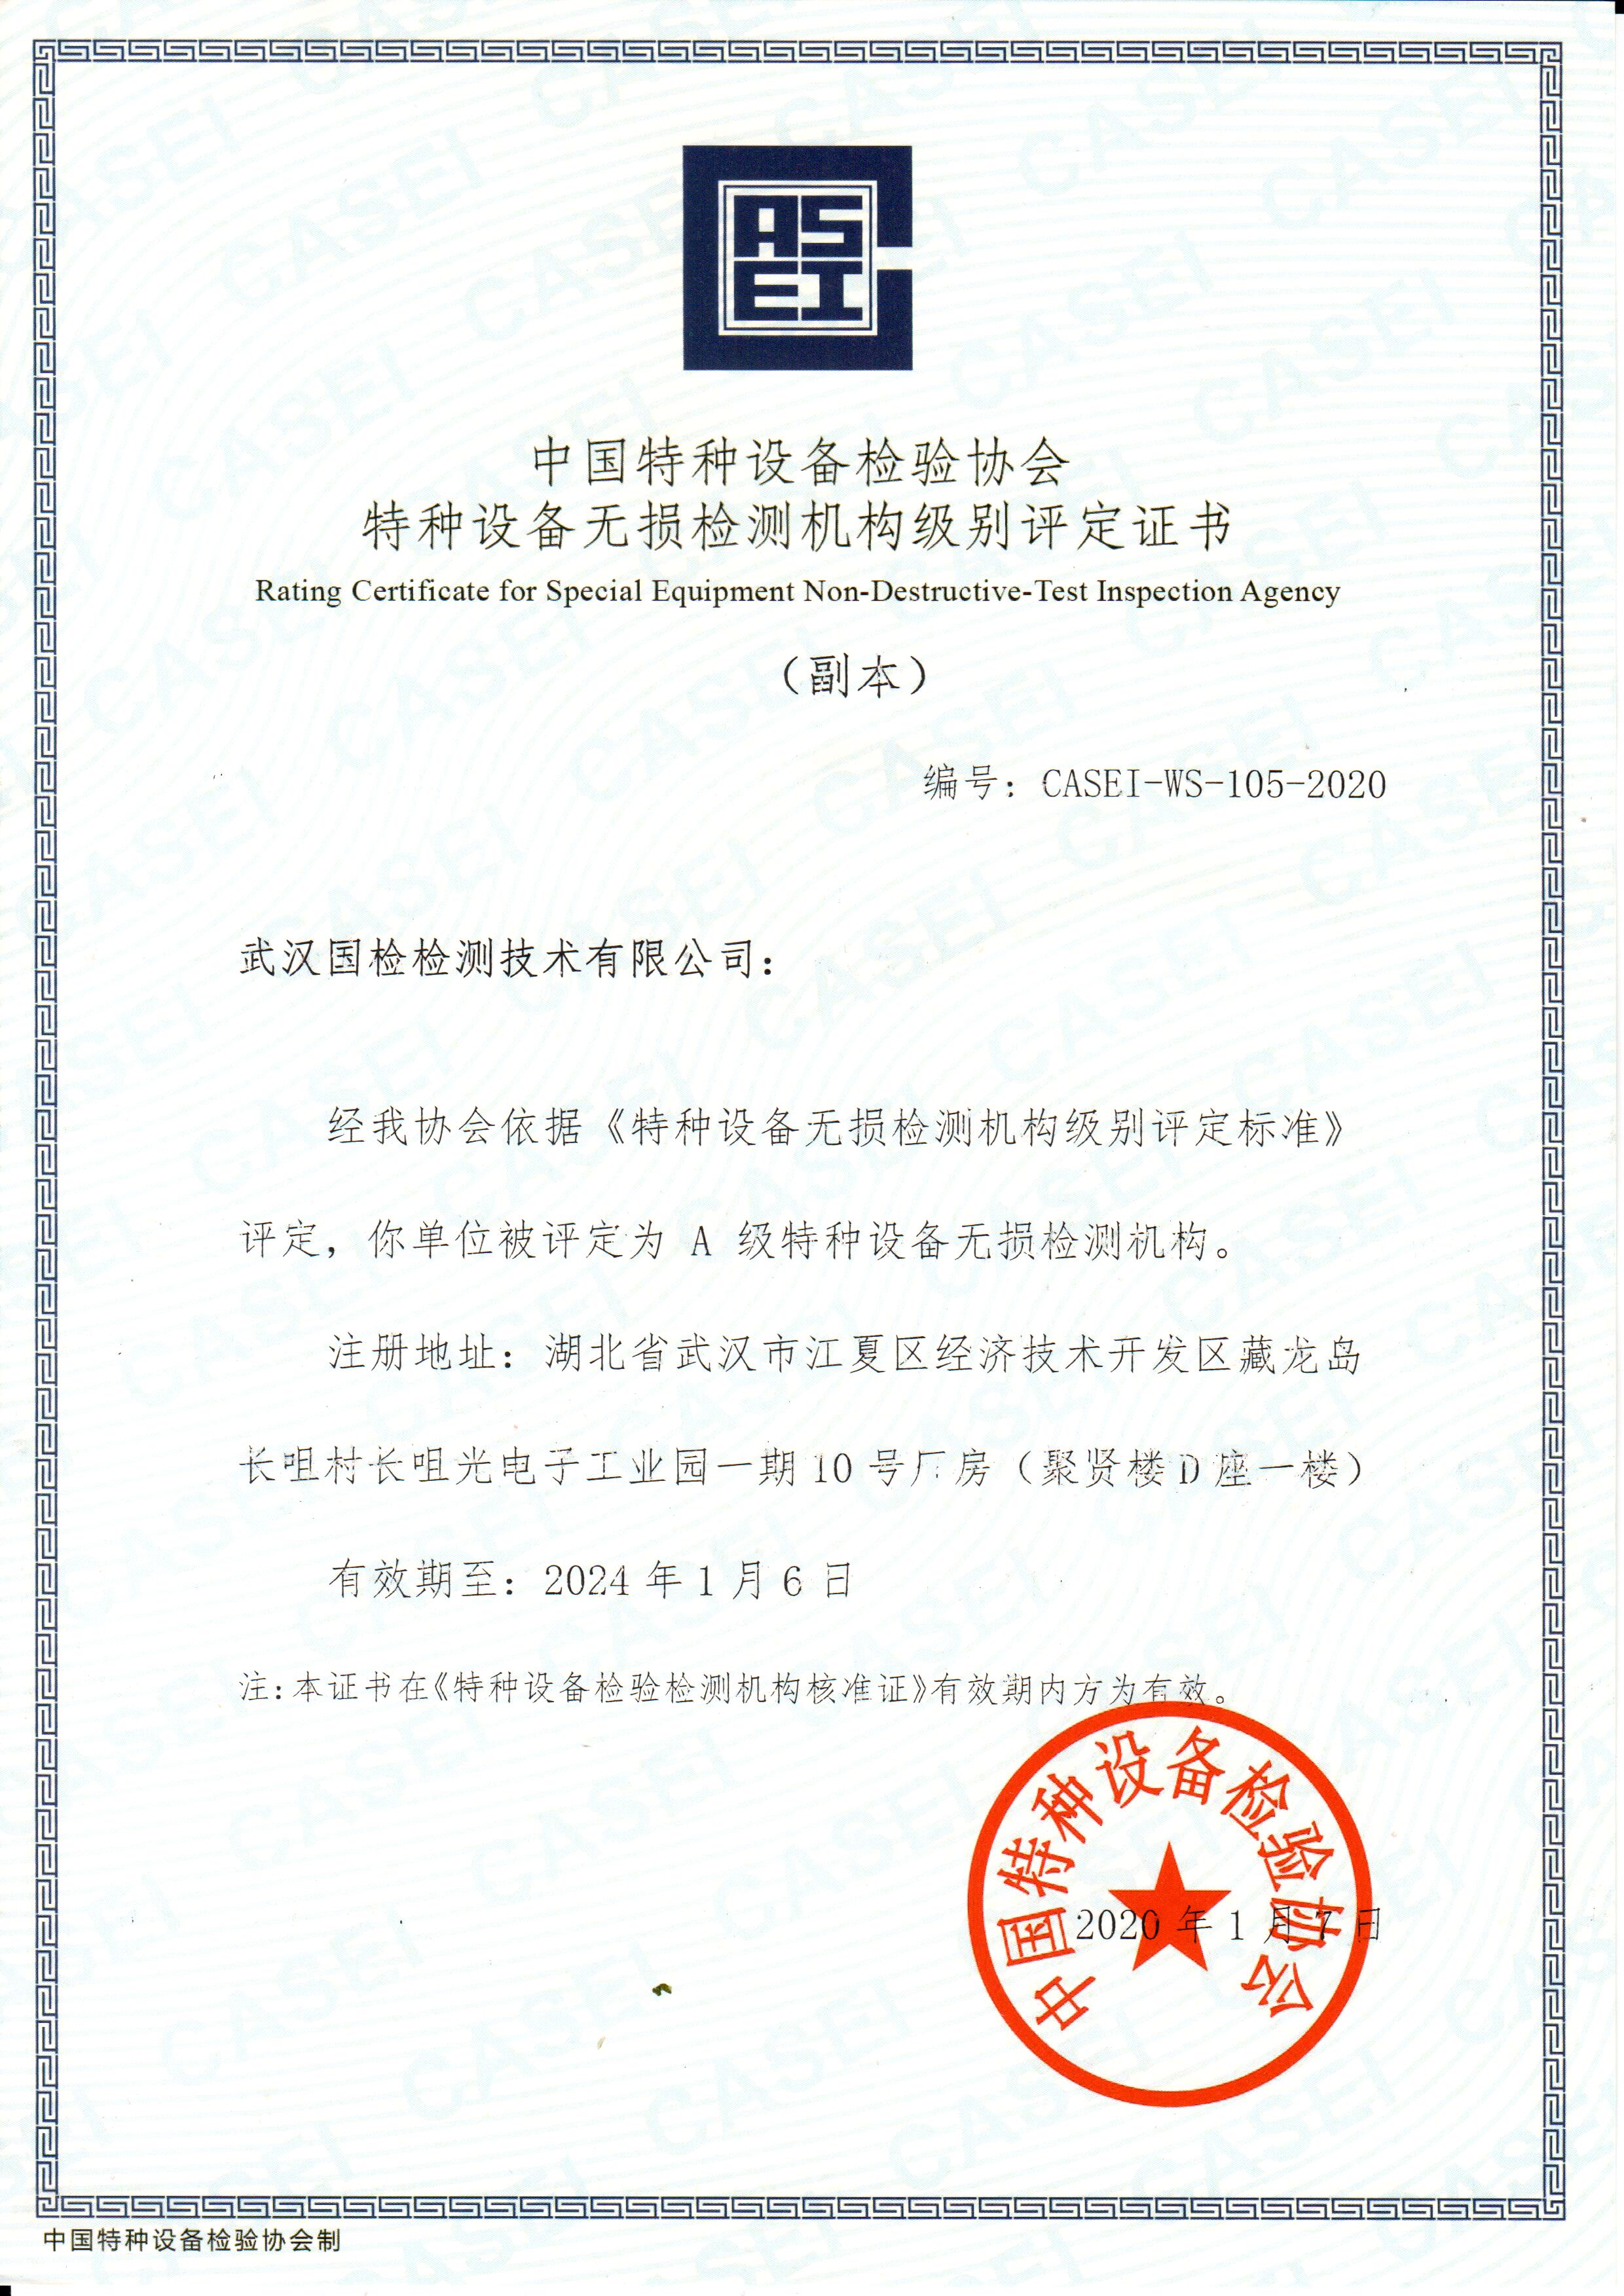 武汉公海赌船官网jc710特种设备无损检测机构级别评定证书